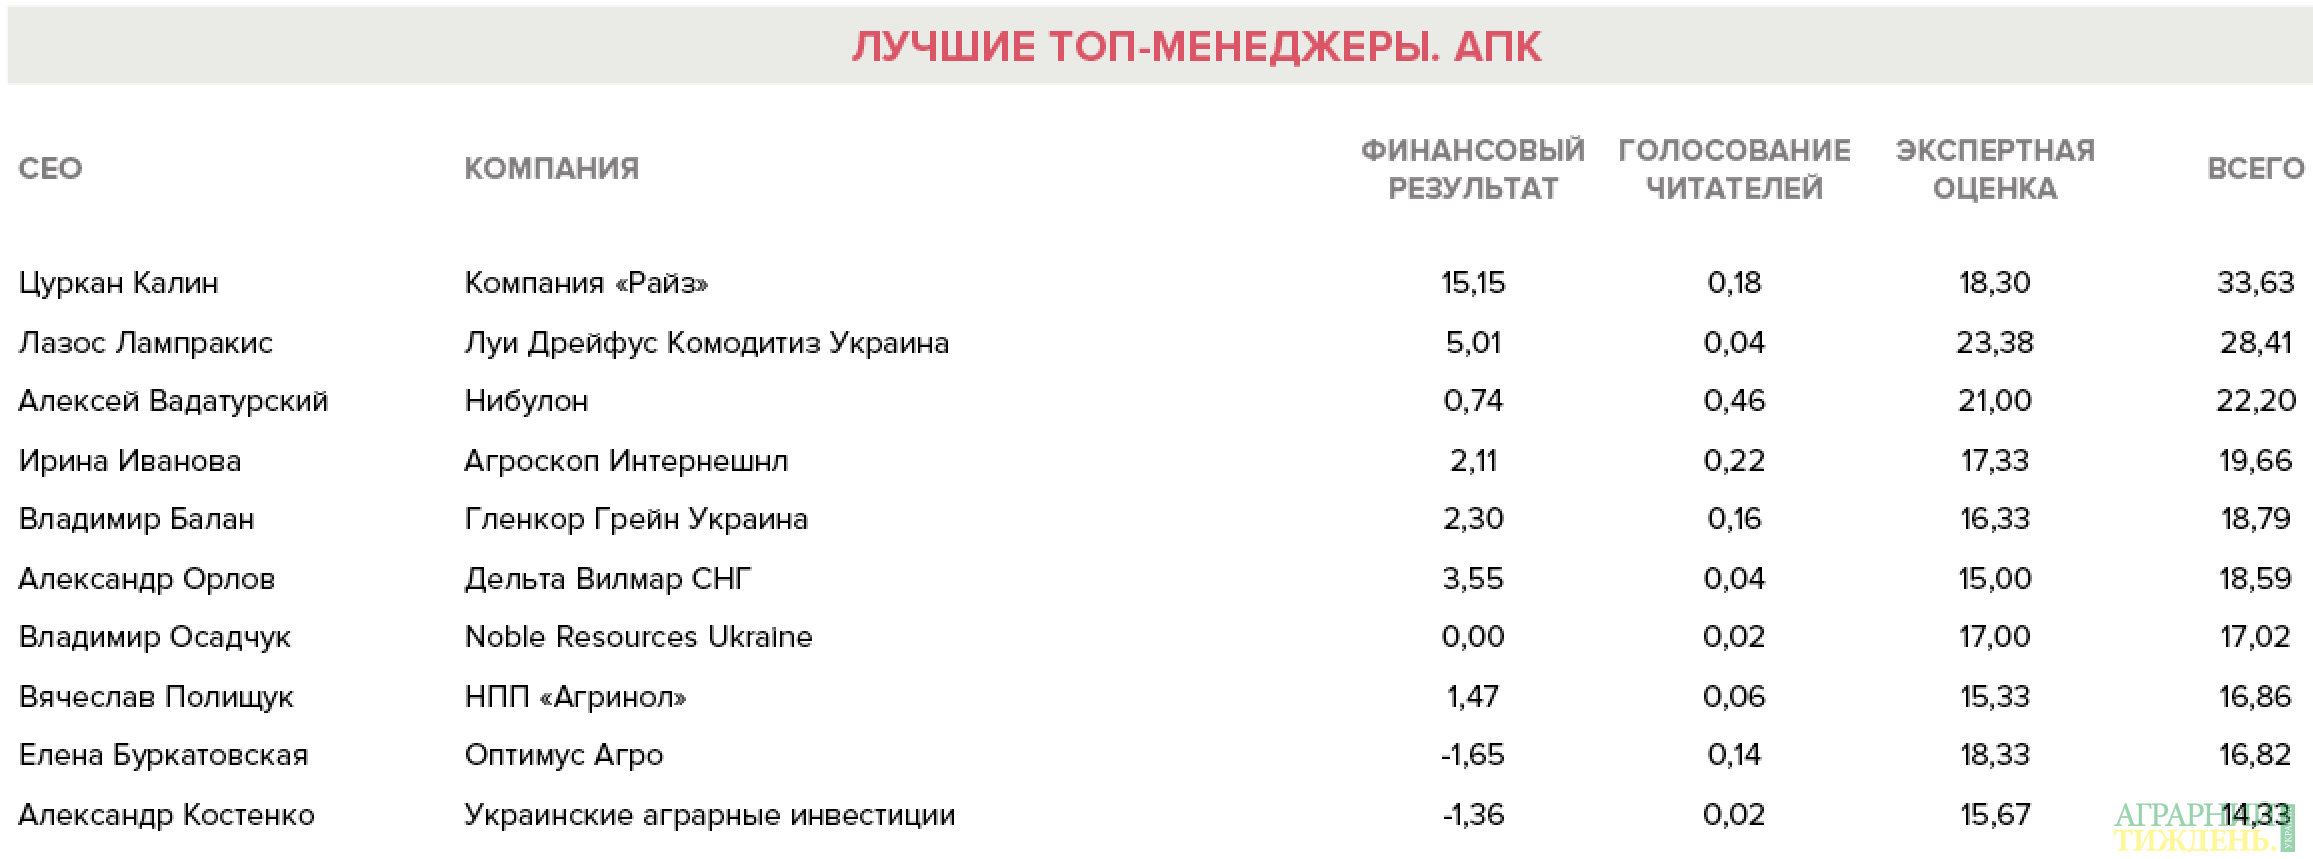 ТОП-10 менеджерів АПК України за 2016 рік